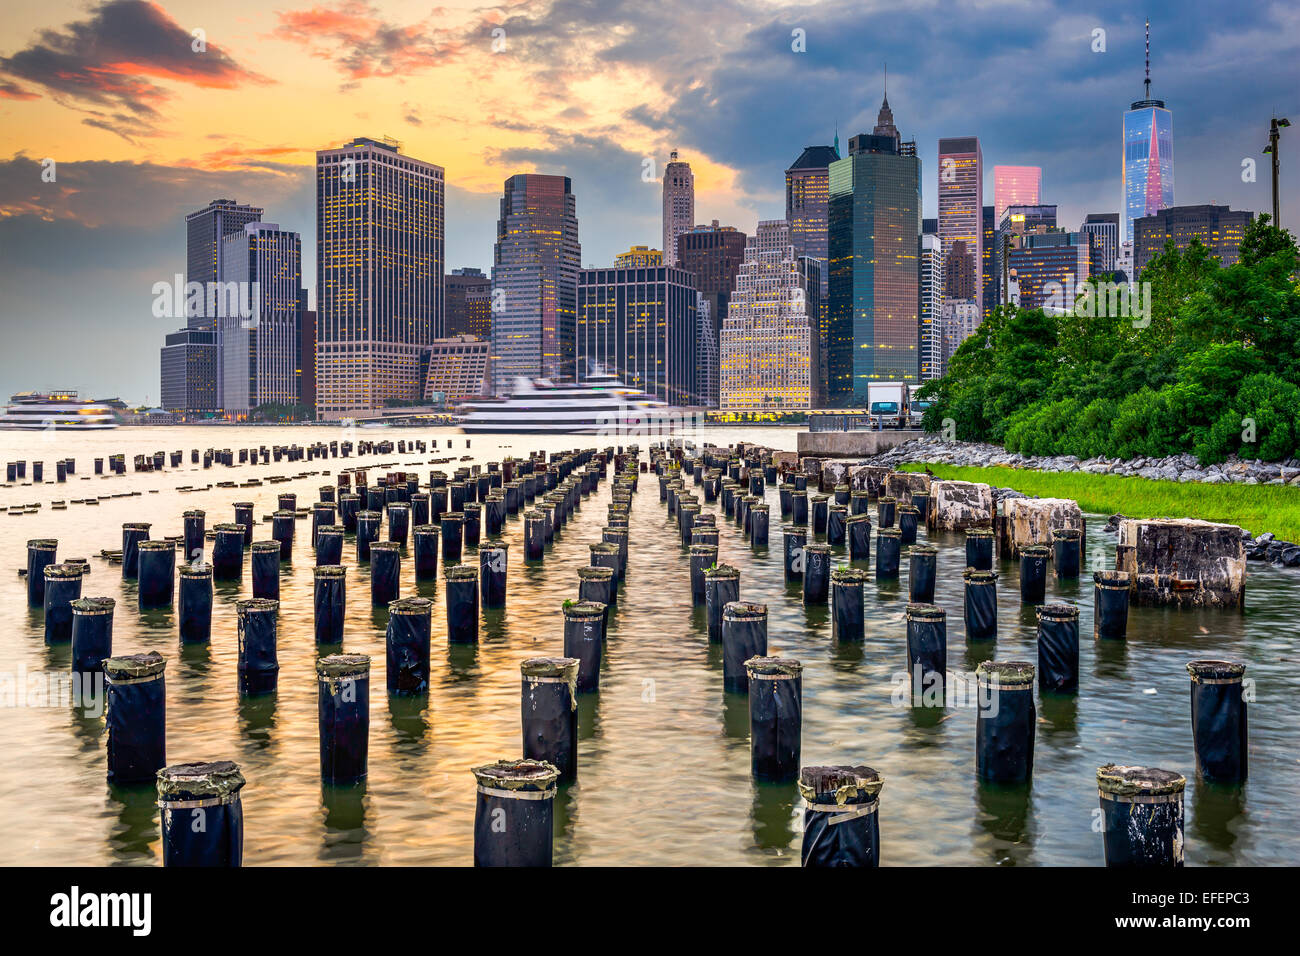 La Ciudad de Nueva York, EE.UU. ciudad en el East River. Foto de stock